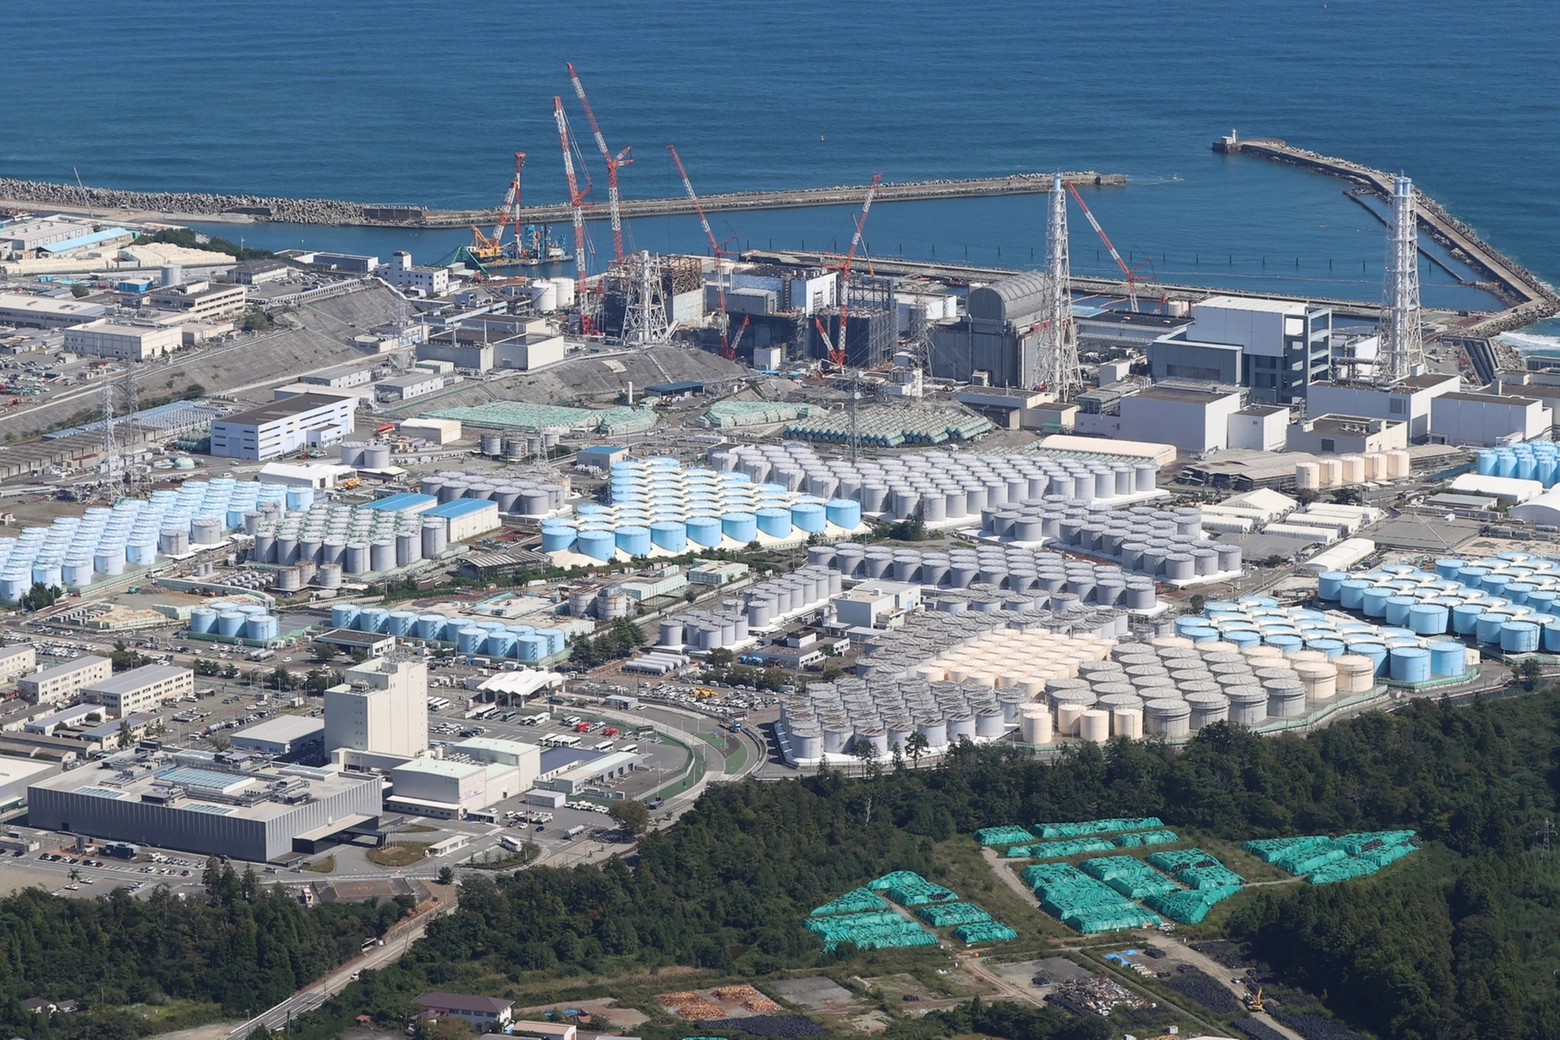 La centrale nucleare di Fukushima, in Giappone